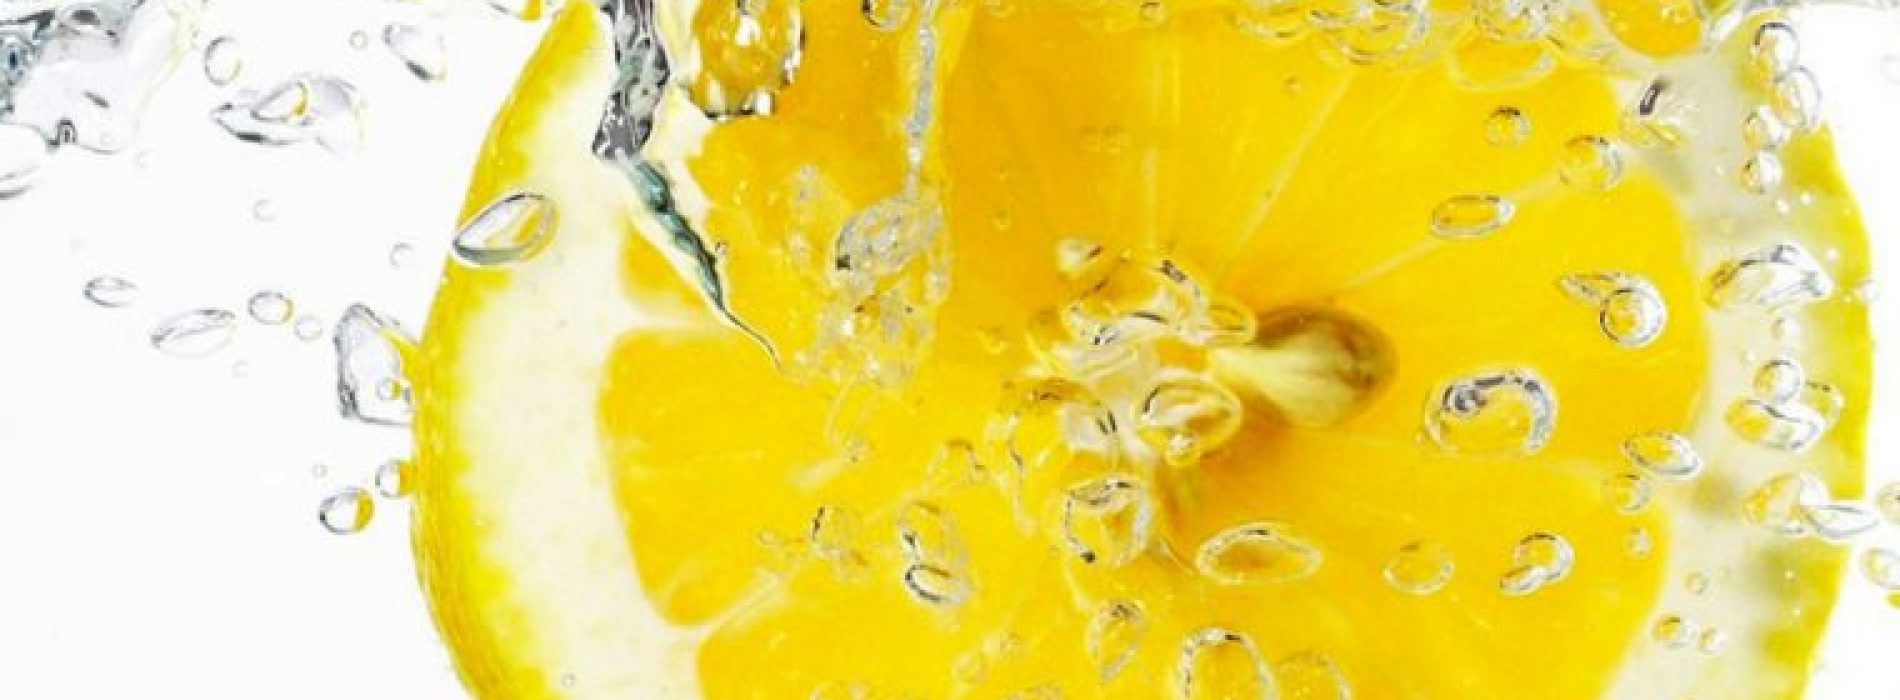 De gezondheidsvoordelen van citroenwater